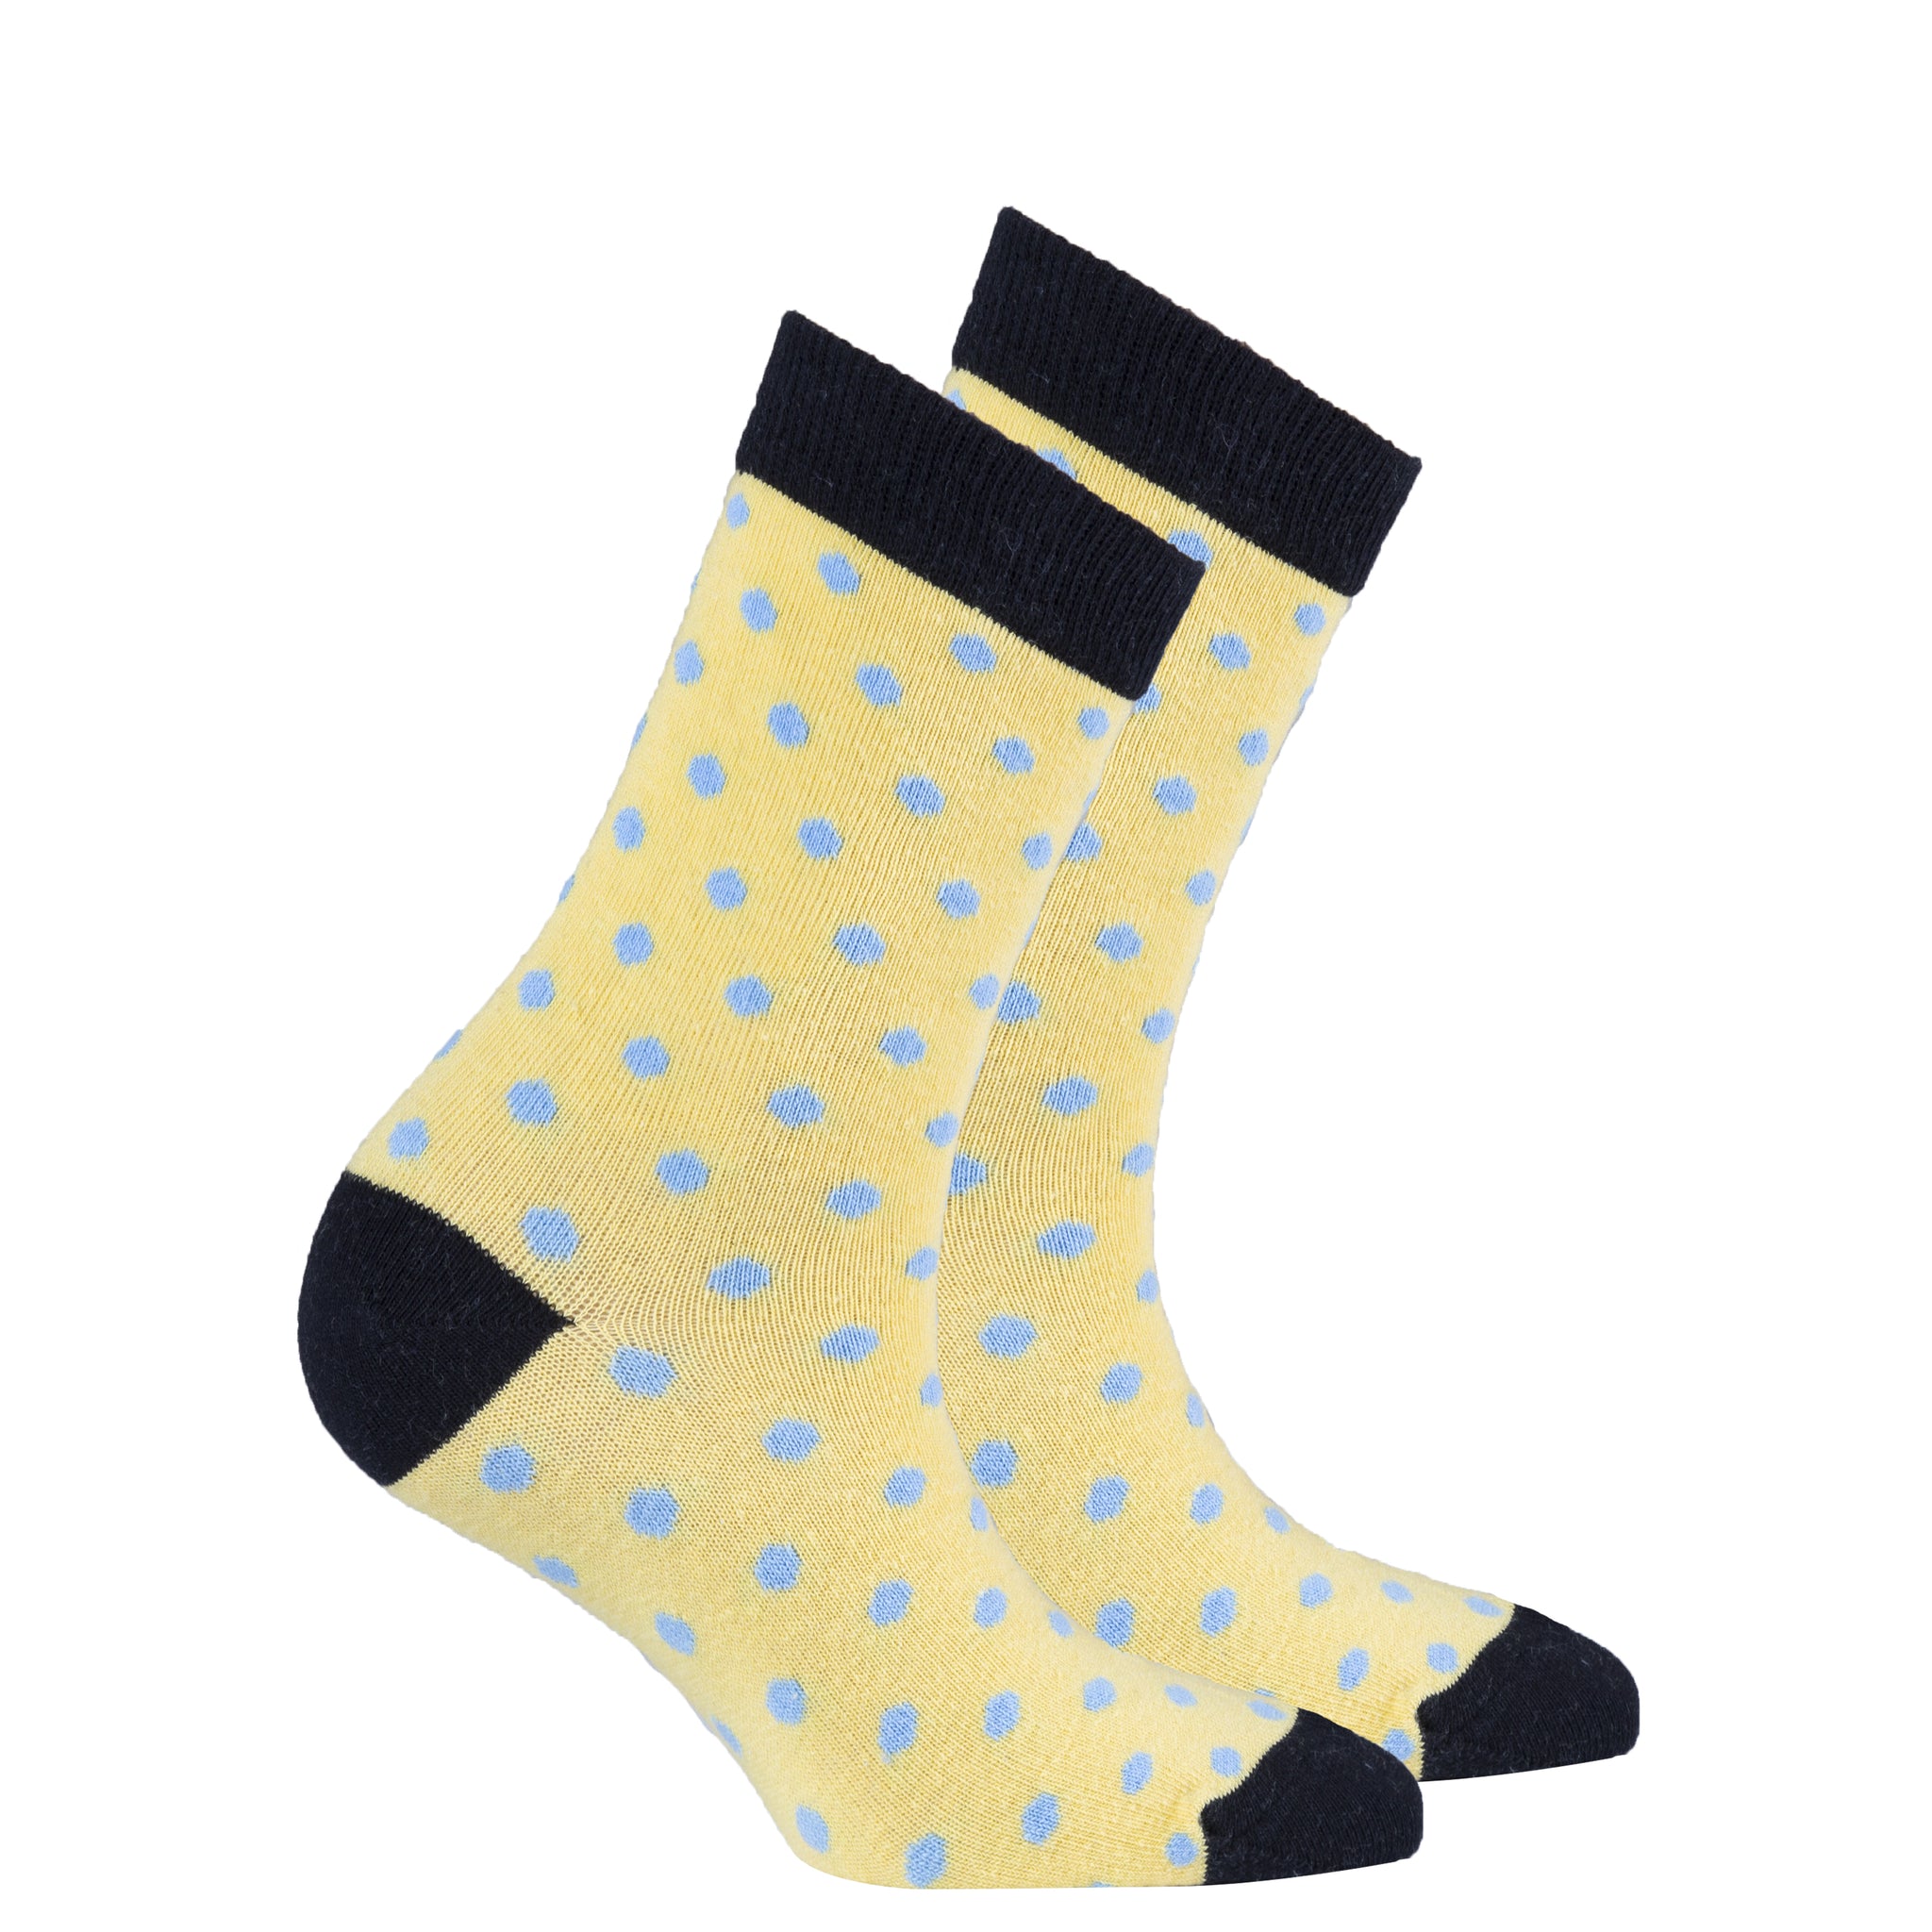 Women's Buttermilk Dot Socks - Socks n Socks